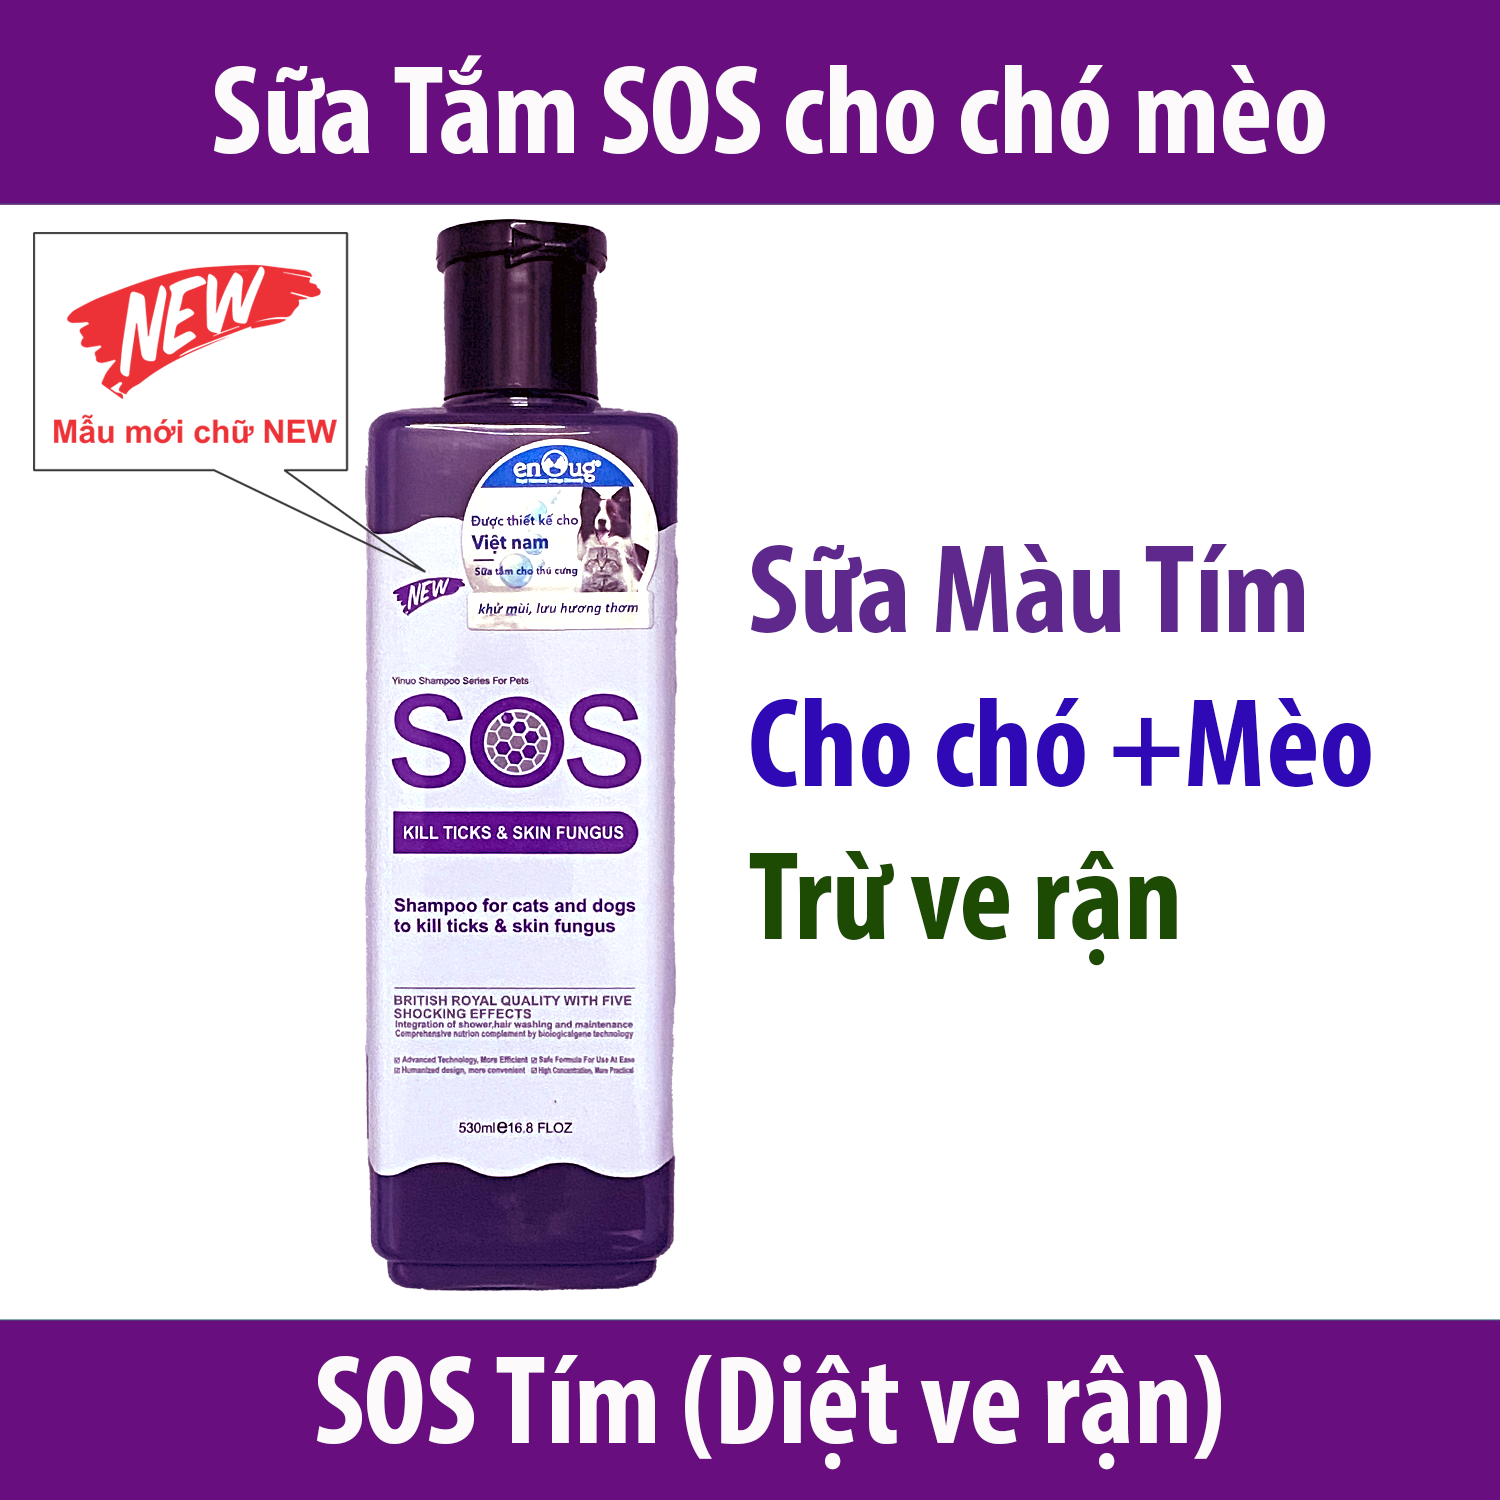 Hanpet - Sữa tắm SOS cho chó mèo MẪU MỚI có chữ NEW